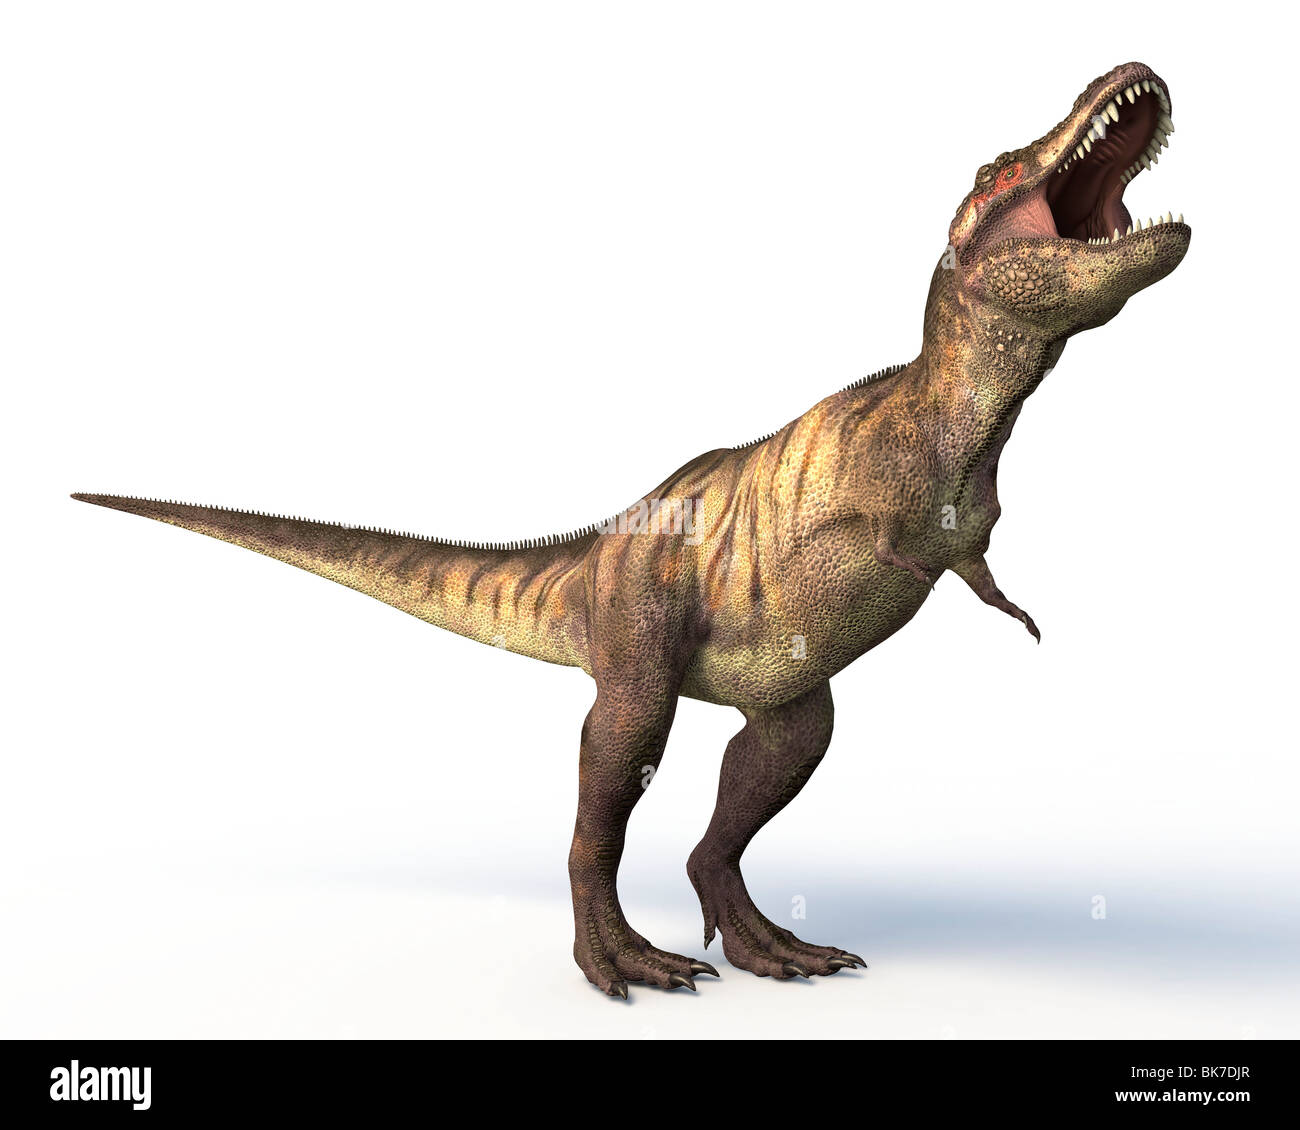 Tyrannosaurus rex dinosaur Stock Photo